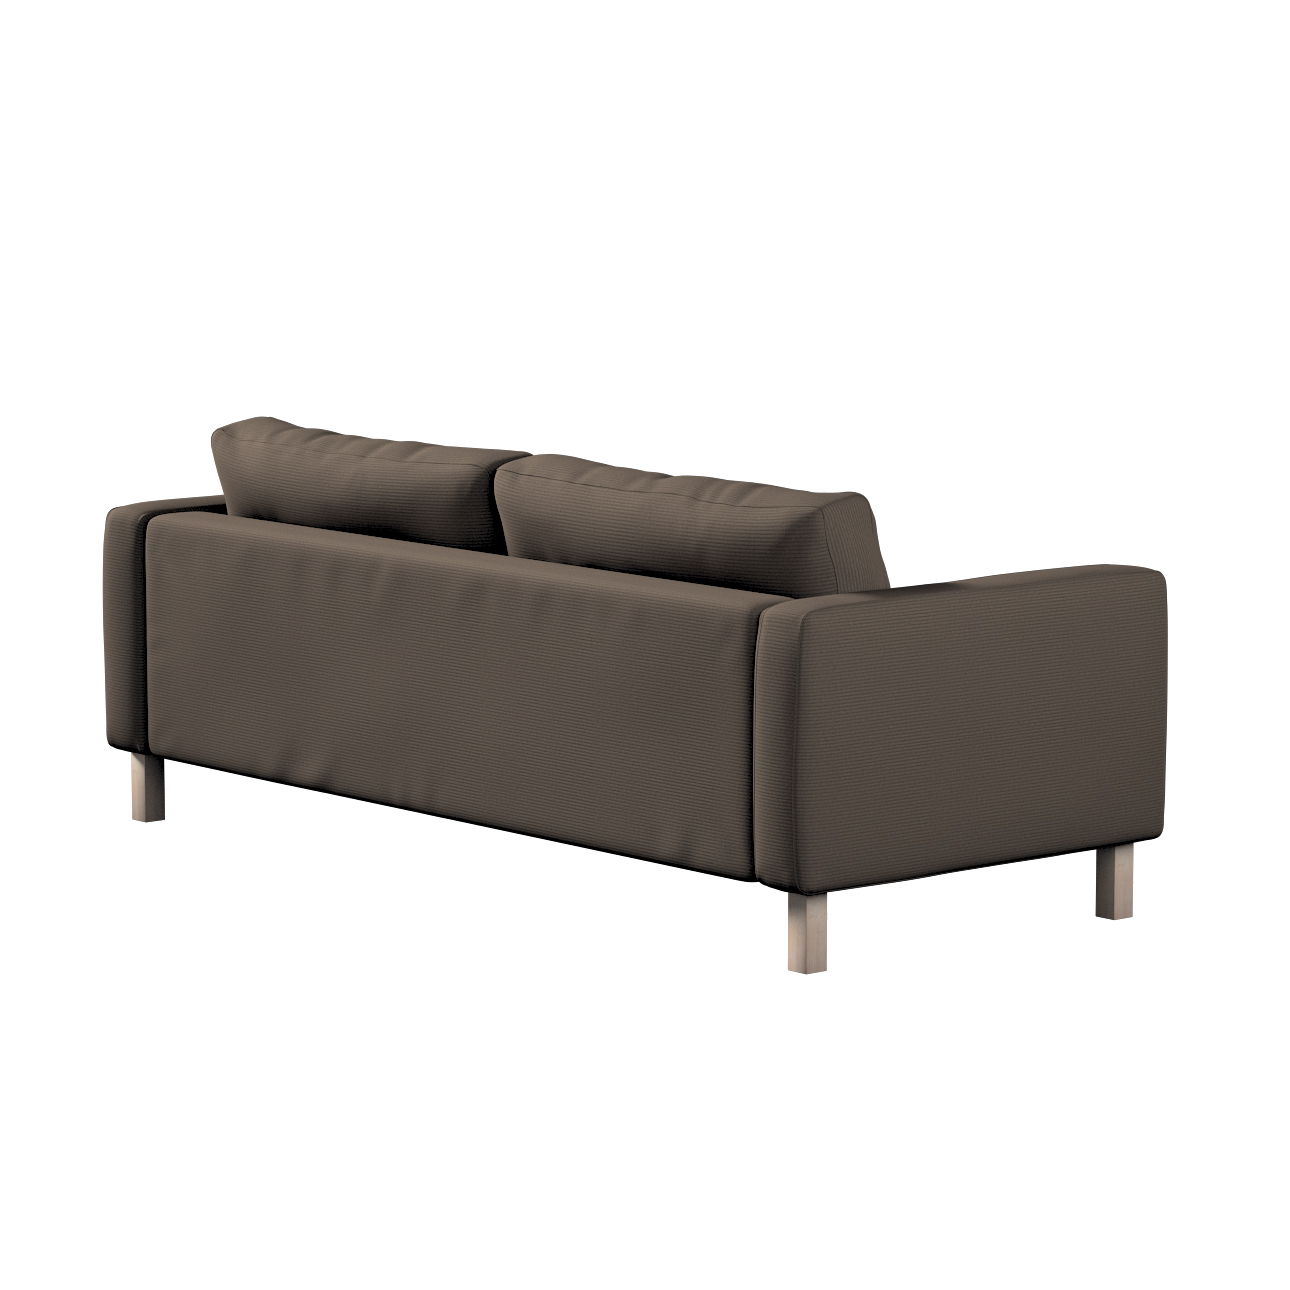 Bezug für Karlstad 3-Sitzer Sofa nicht ausklappbar, kurz, braun, Bezug für günstig online kaufen